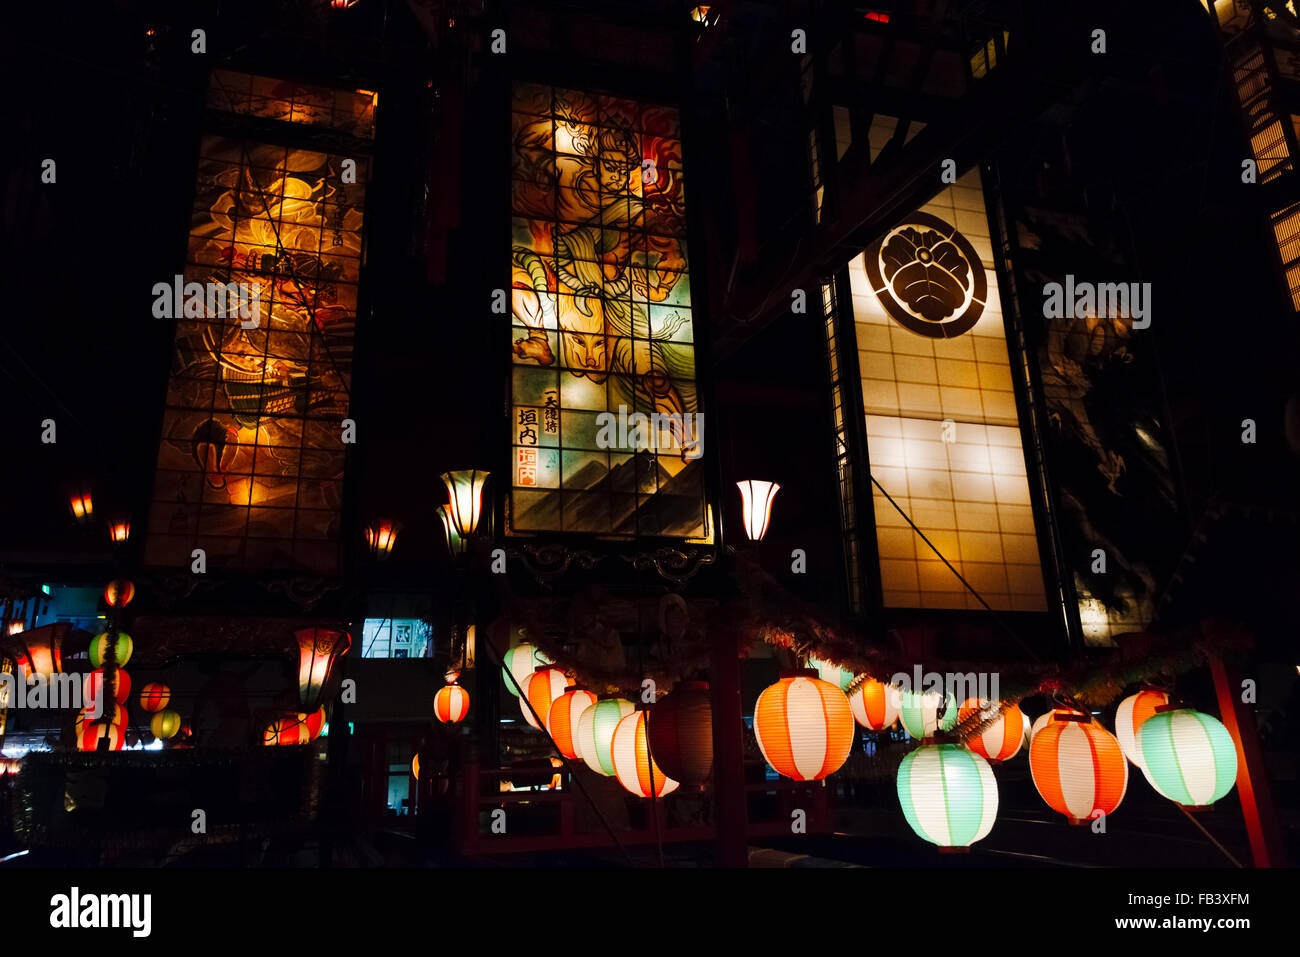 Festival lumineux massive flotte connu sous le nom de Kiriko Kiriko à Hall, Wajima, Péninsule de Noto, préfecture d'Ishikawa, Japon Banque D'Images